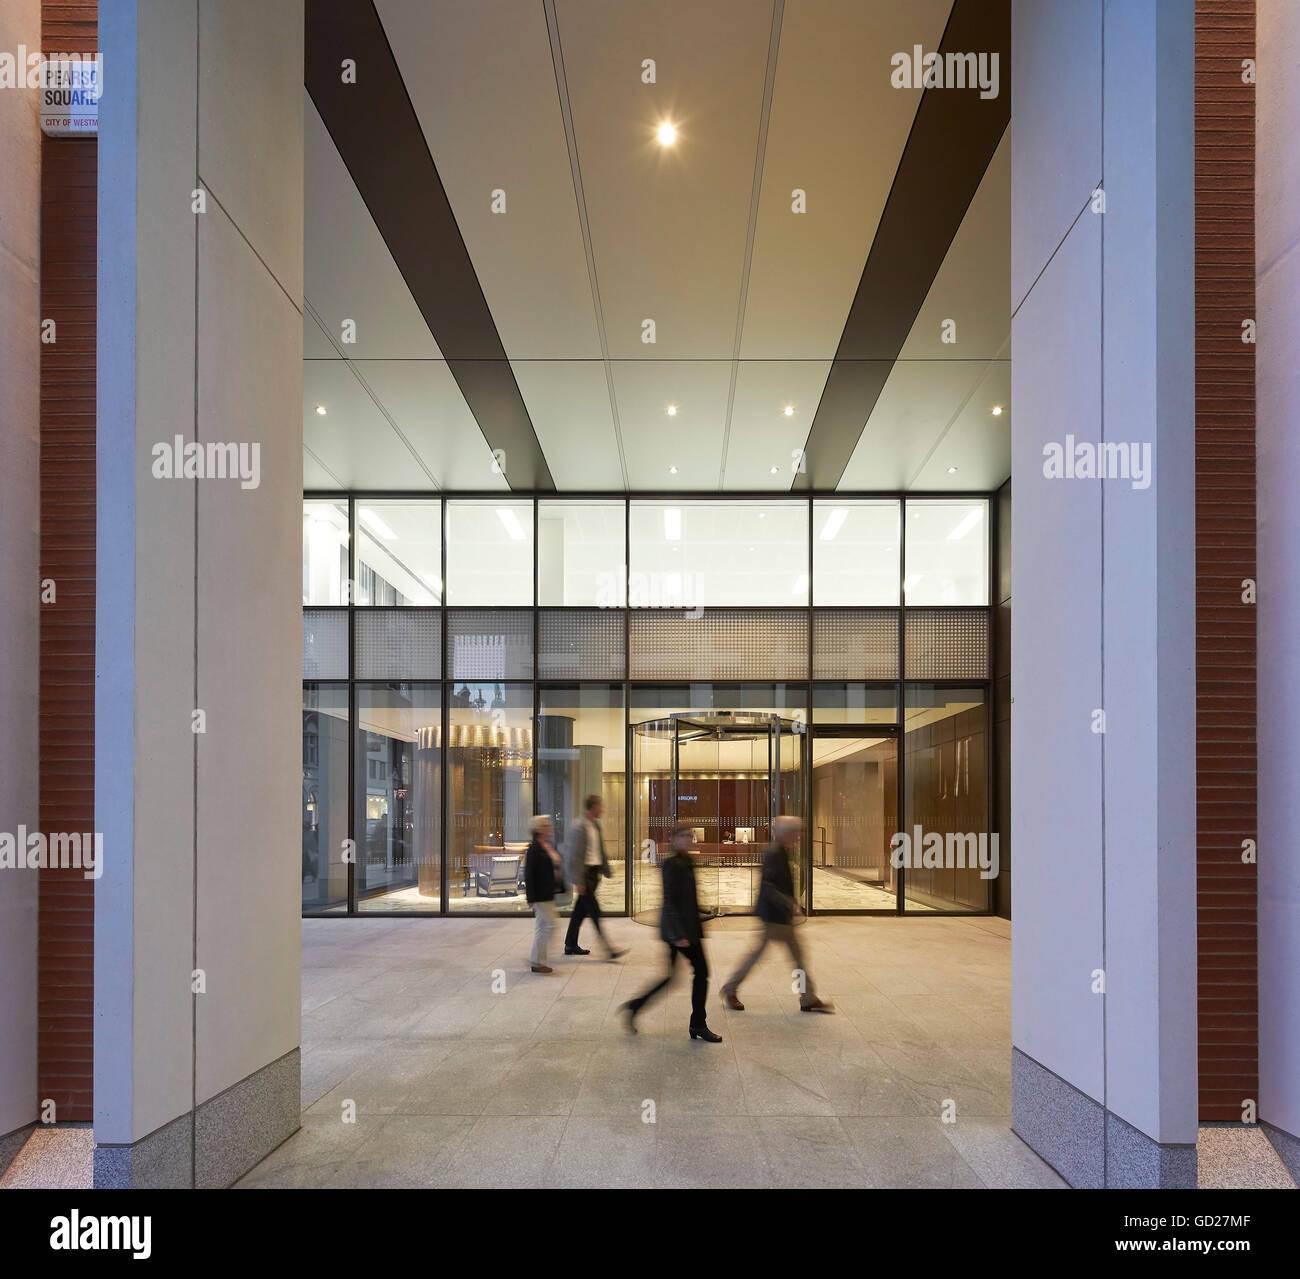 Pearson Vue du Square vers illuminé hall. Fitzroy, London, Royaume-Uni. Architecte : Sheppard Robson, 2015. Banque D'Images